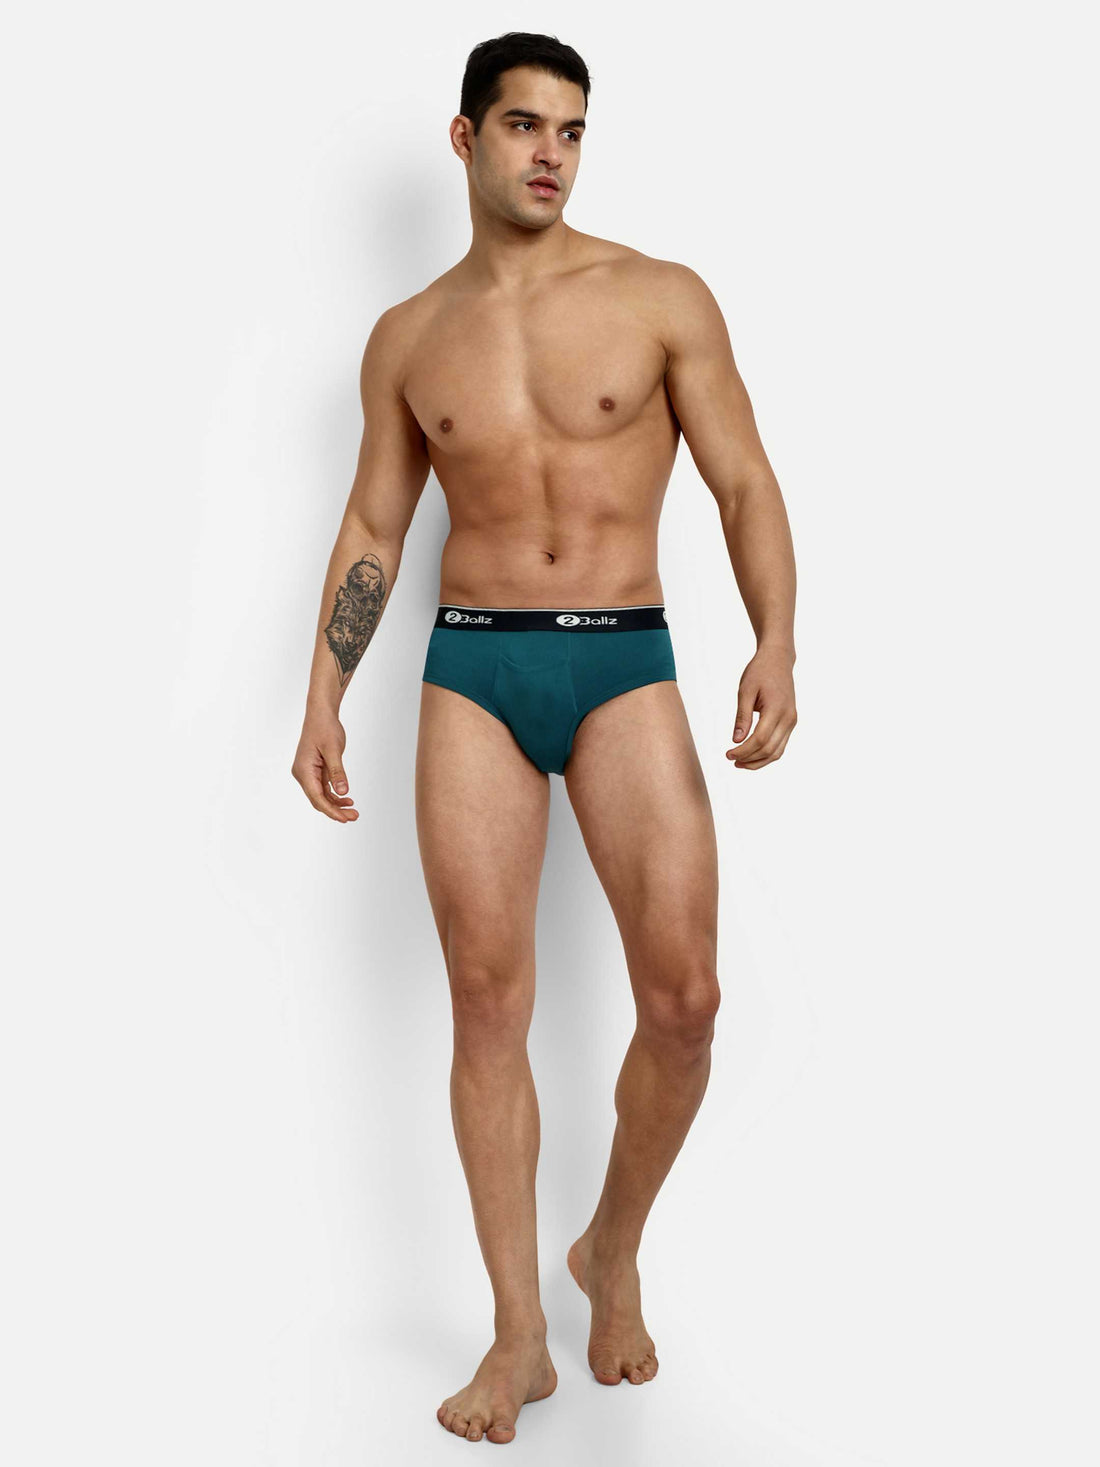 Men's Pouch Underwear, 2Ballz Brief with Built-in Pouch